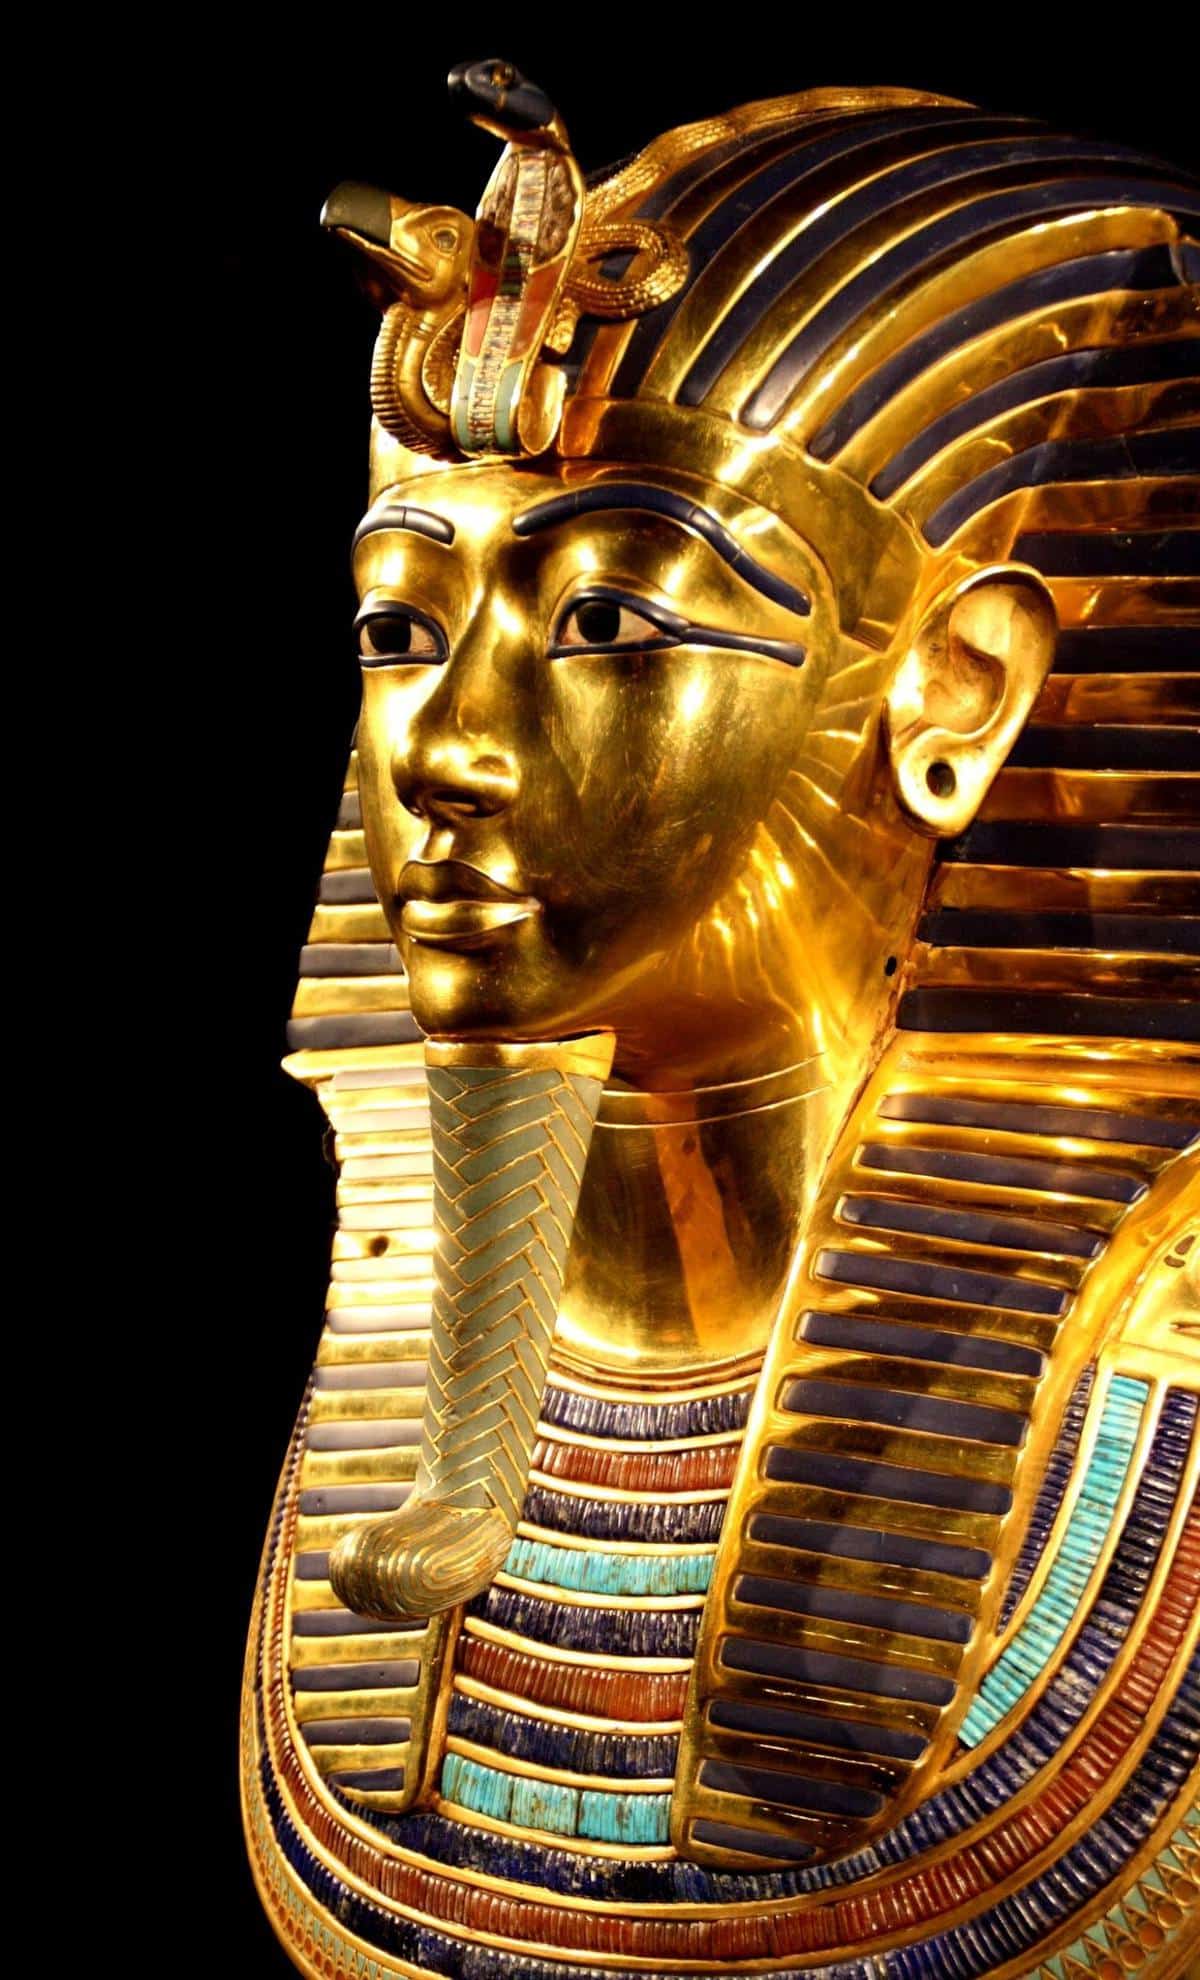 tutankhamun death mask pharaonic egypt